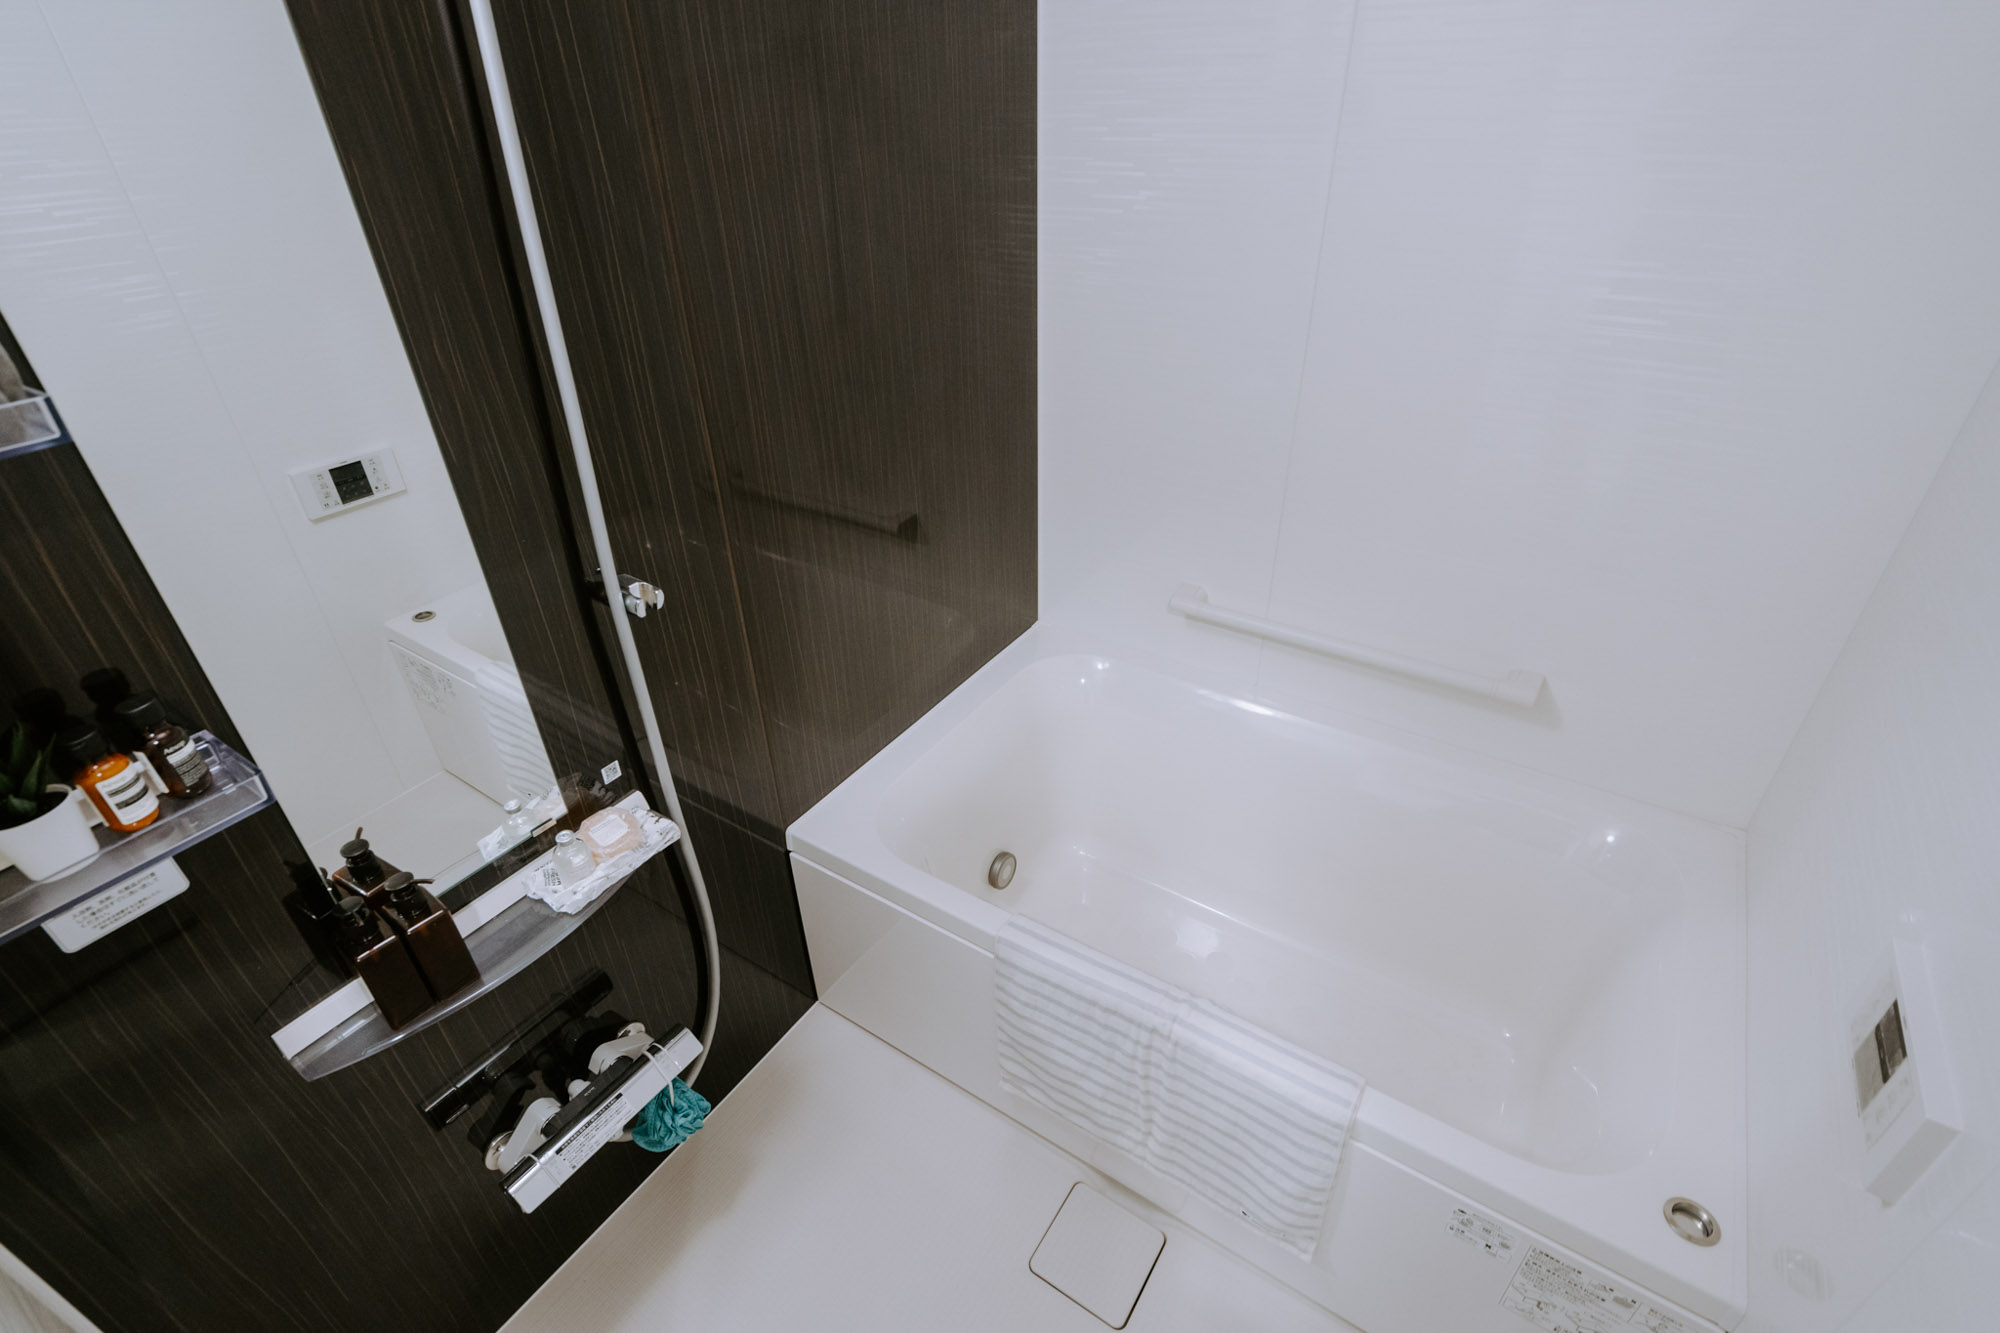 水まわりの設備の充実度も新築ならでは。浴槽は幅が広いタイプがついていて、ゆったりとバスタイムが楽しめそう。